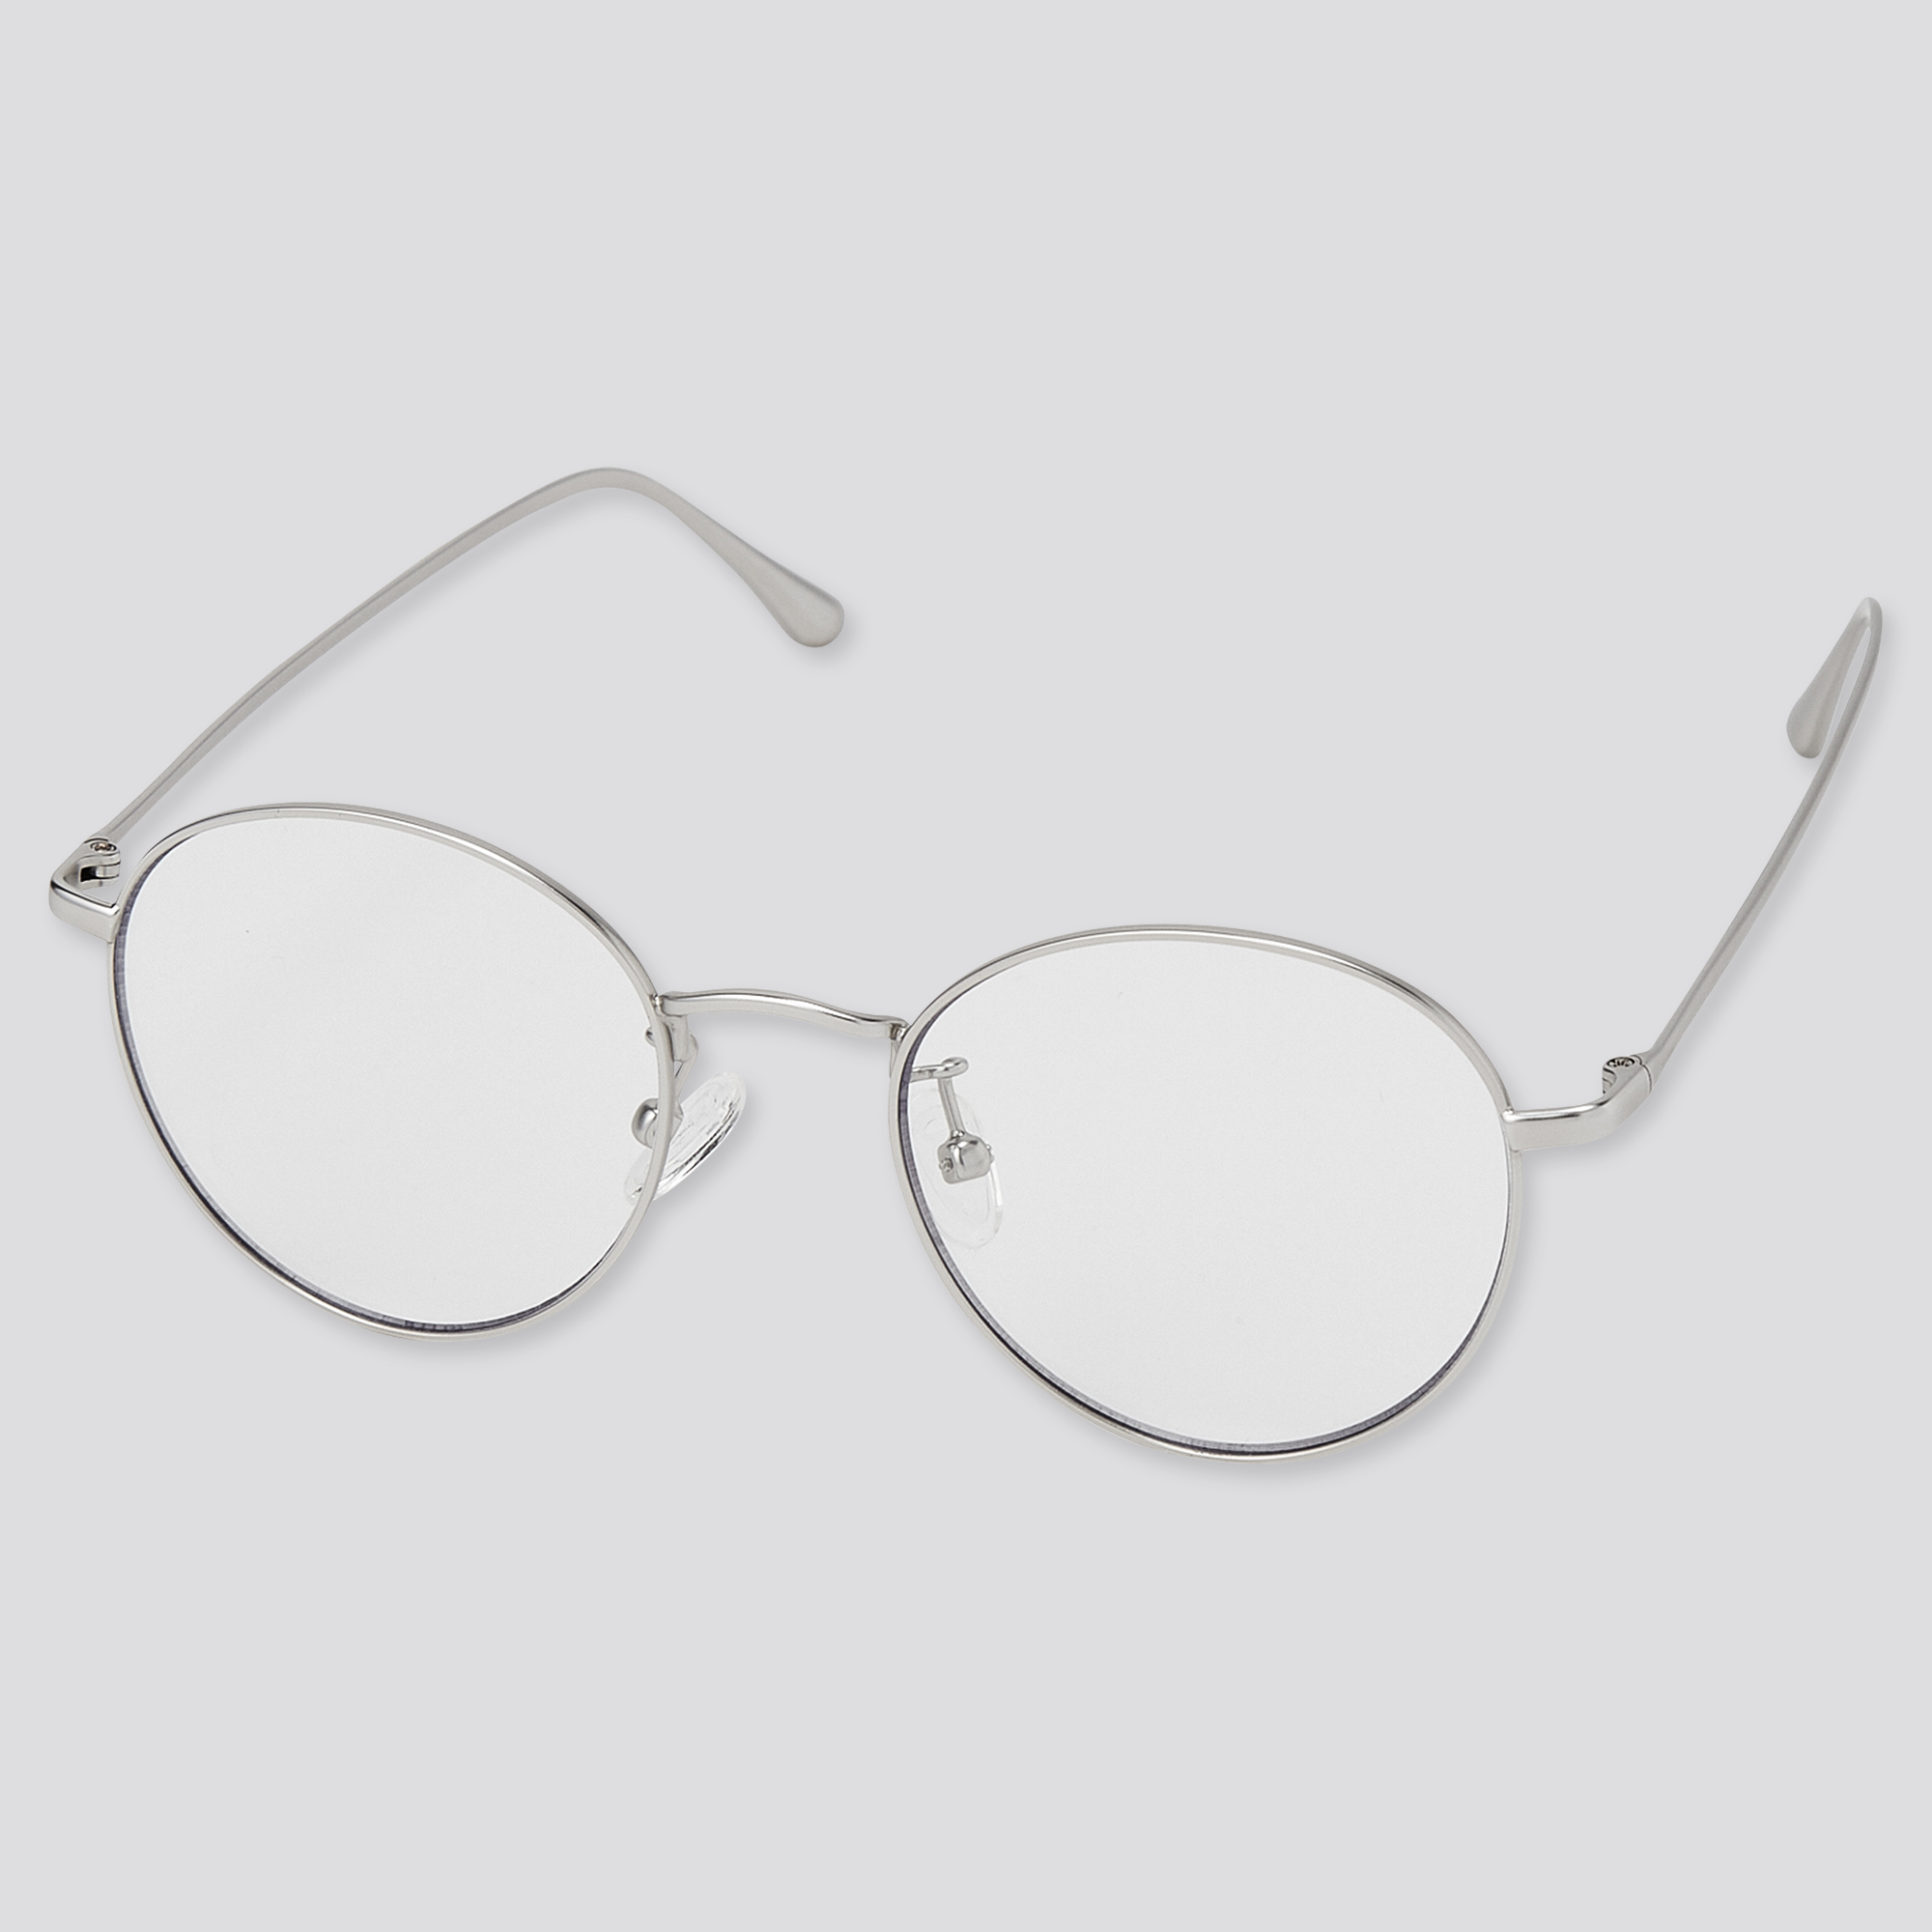 Lumanuby /Étui /à lunettes de soleil pour homme et femme en EVA de haute qualit/é avec fermeture /Éclair